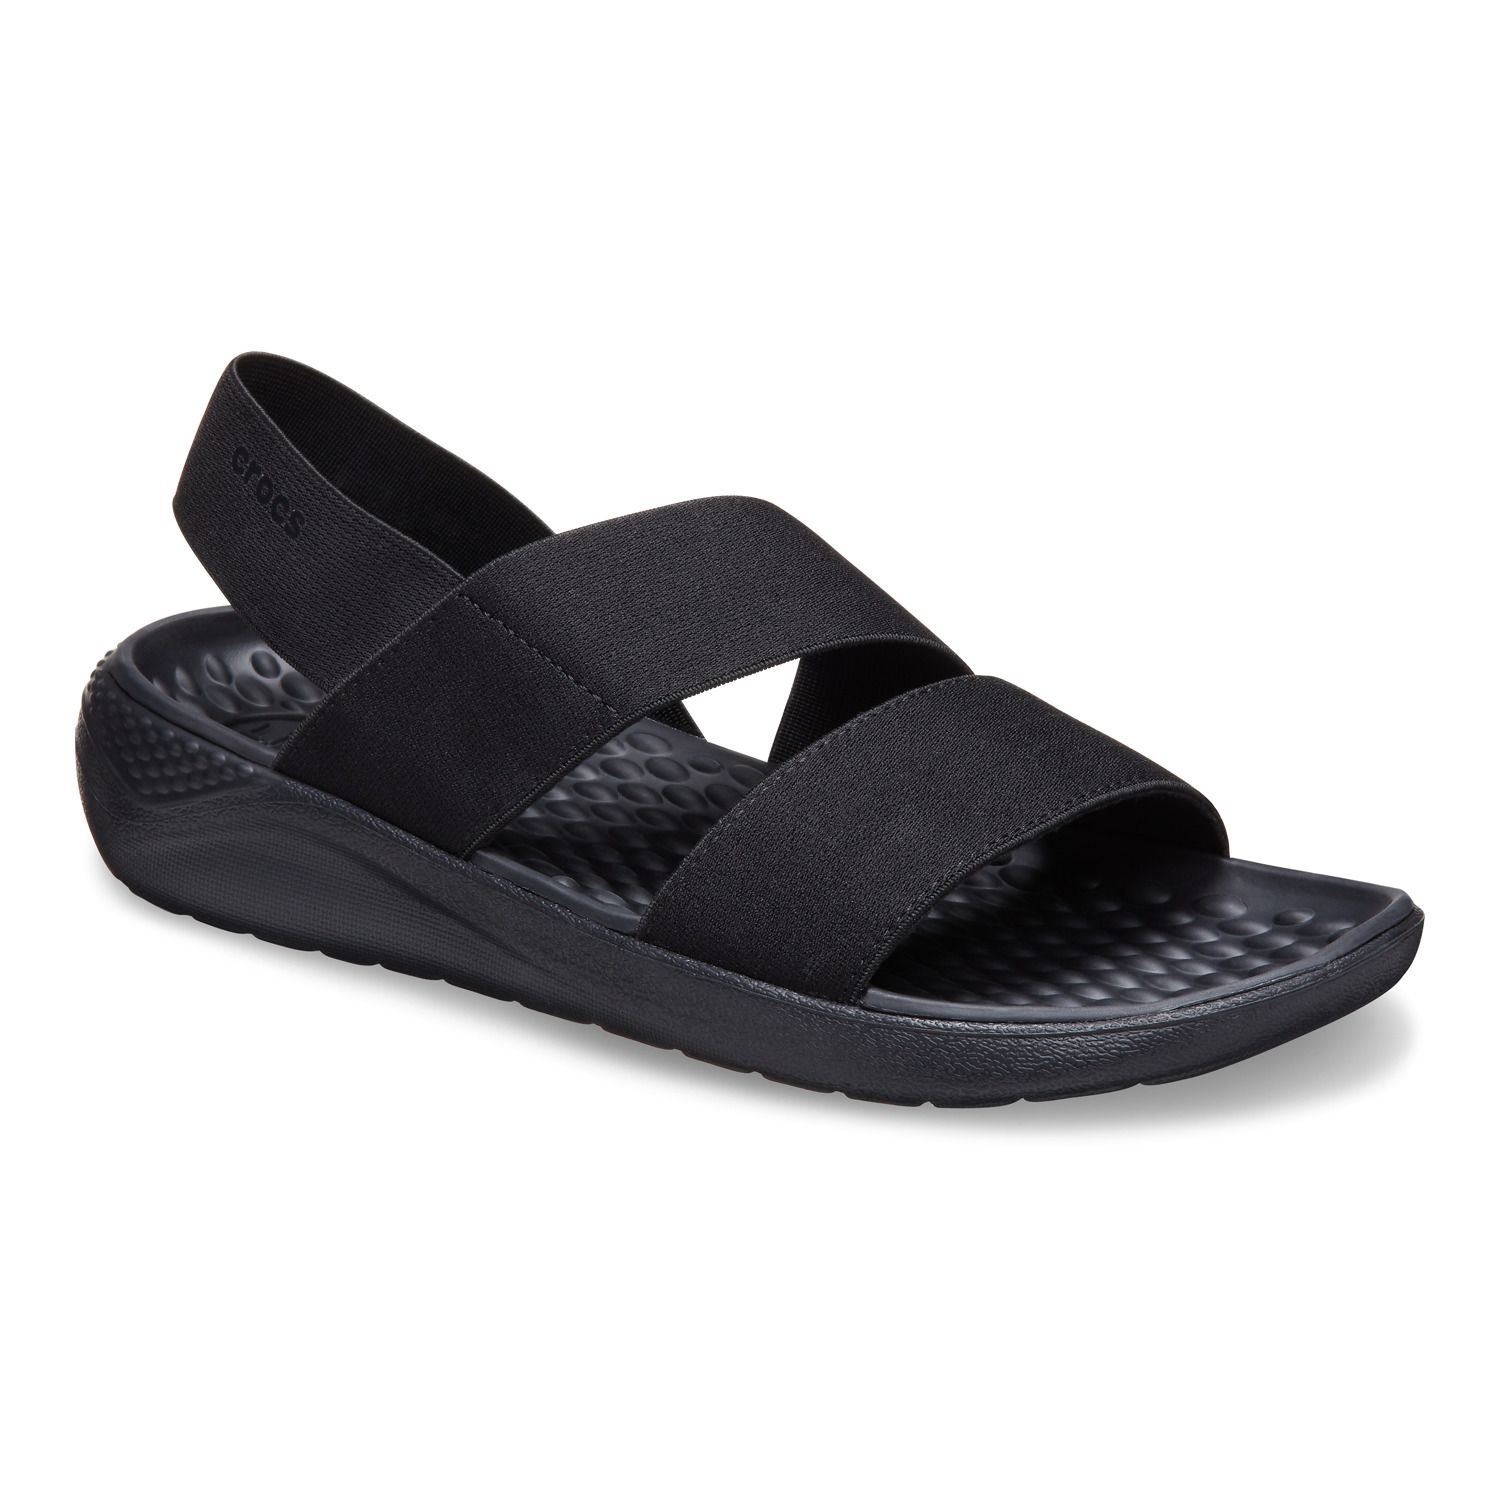 crocs literide sandals